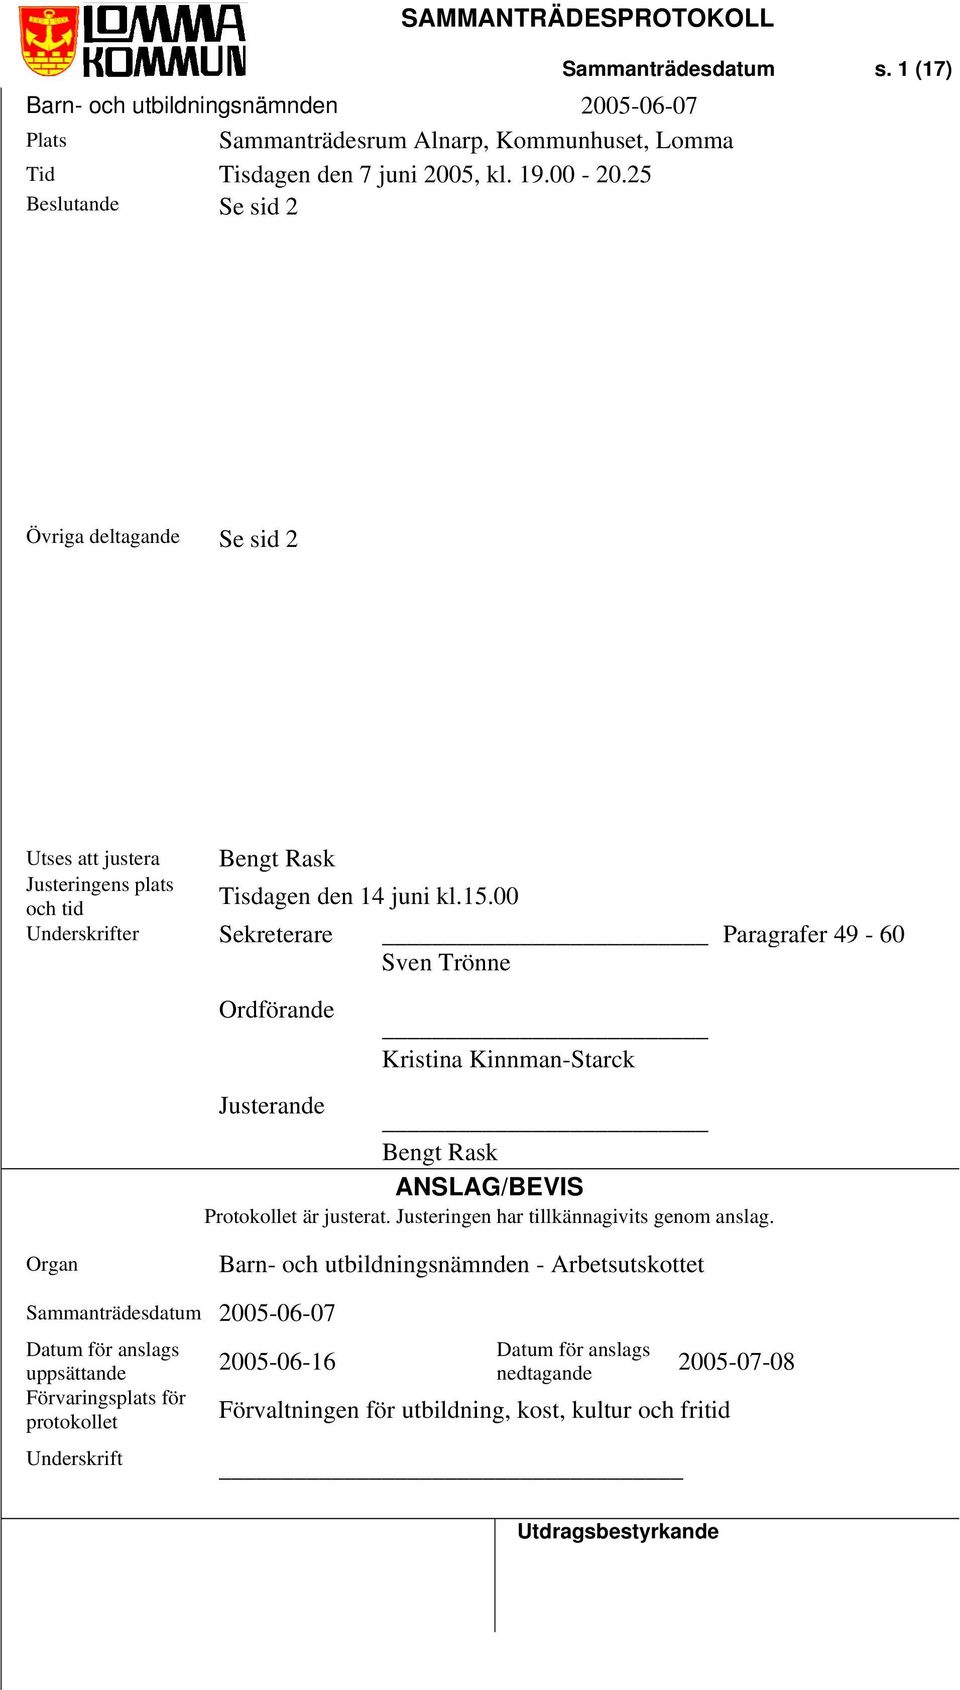 00 och tid Underskrifter Sekreterare Paragrafer 49-60 Sven Trönne Ordförande Kristina Kinnman-Starck Justerande Bengt Rask ANSLAG/BEVIS Protokollet är justerat.